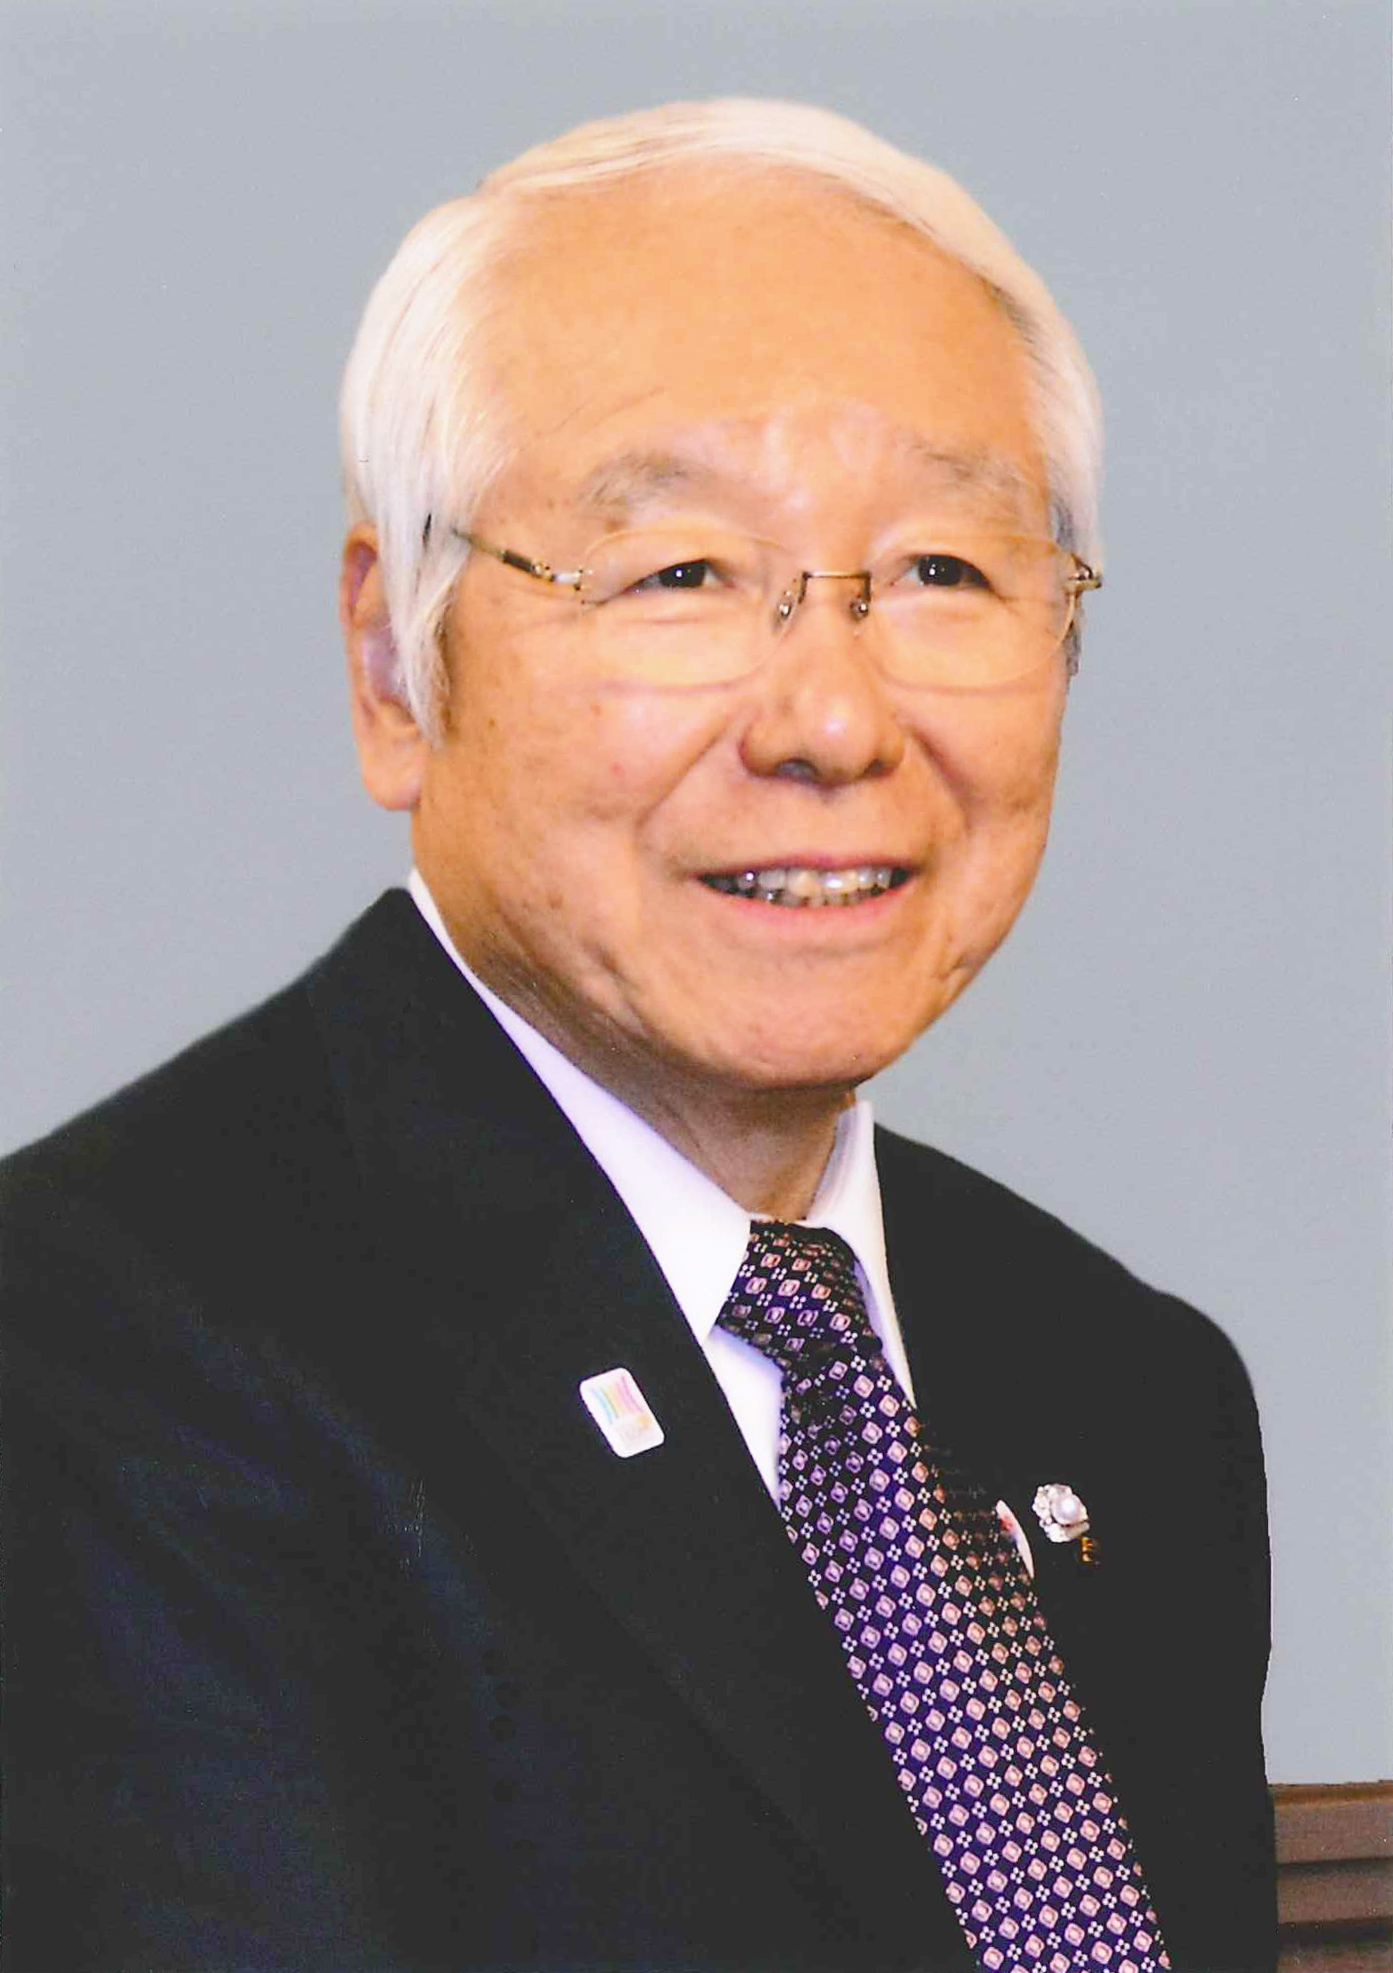 兵庫 県 知事